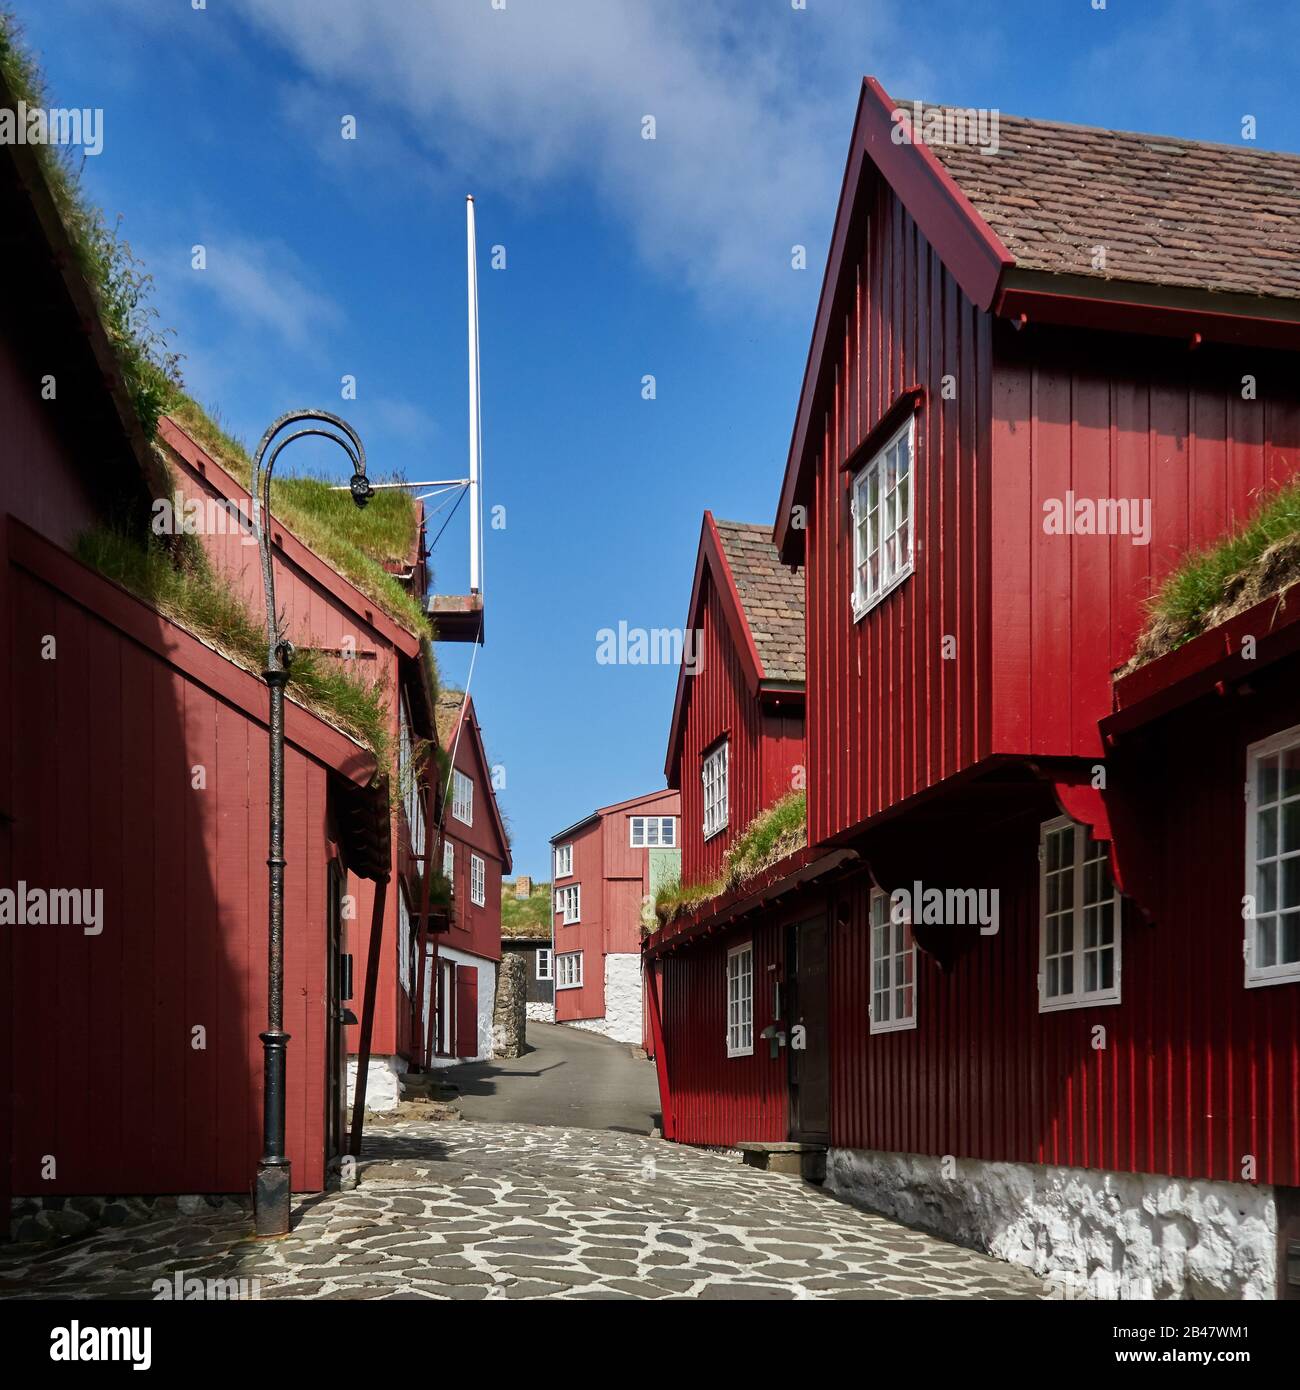 Dänemark, Halbinsel Tinganes, Torshavn, Streymoy, Färöer. Tinganes ist der historische Ort der färöischen landsstýri (Regierung) und ein zentraler Teil von Tórshavn. Der Name Tinganes bedeutet im färöischen "landtagspunkt" oder "landtagspunkt". Viele der Holzhäuser auf Tinganes wurden im 16. Und 17. Jahrhundert erbaut und haben die typische rote Farbe sowie das auf den Färöern sehr verbreitete Grasdach. Stockfoto